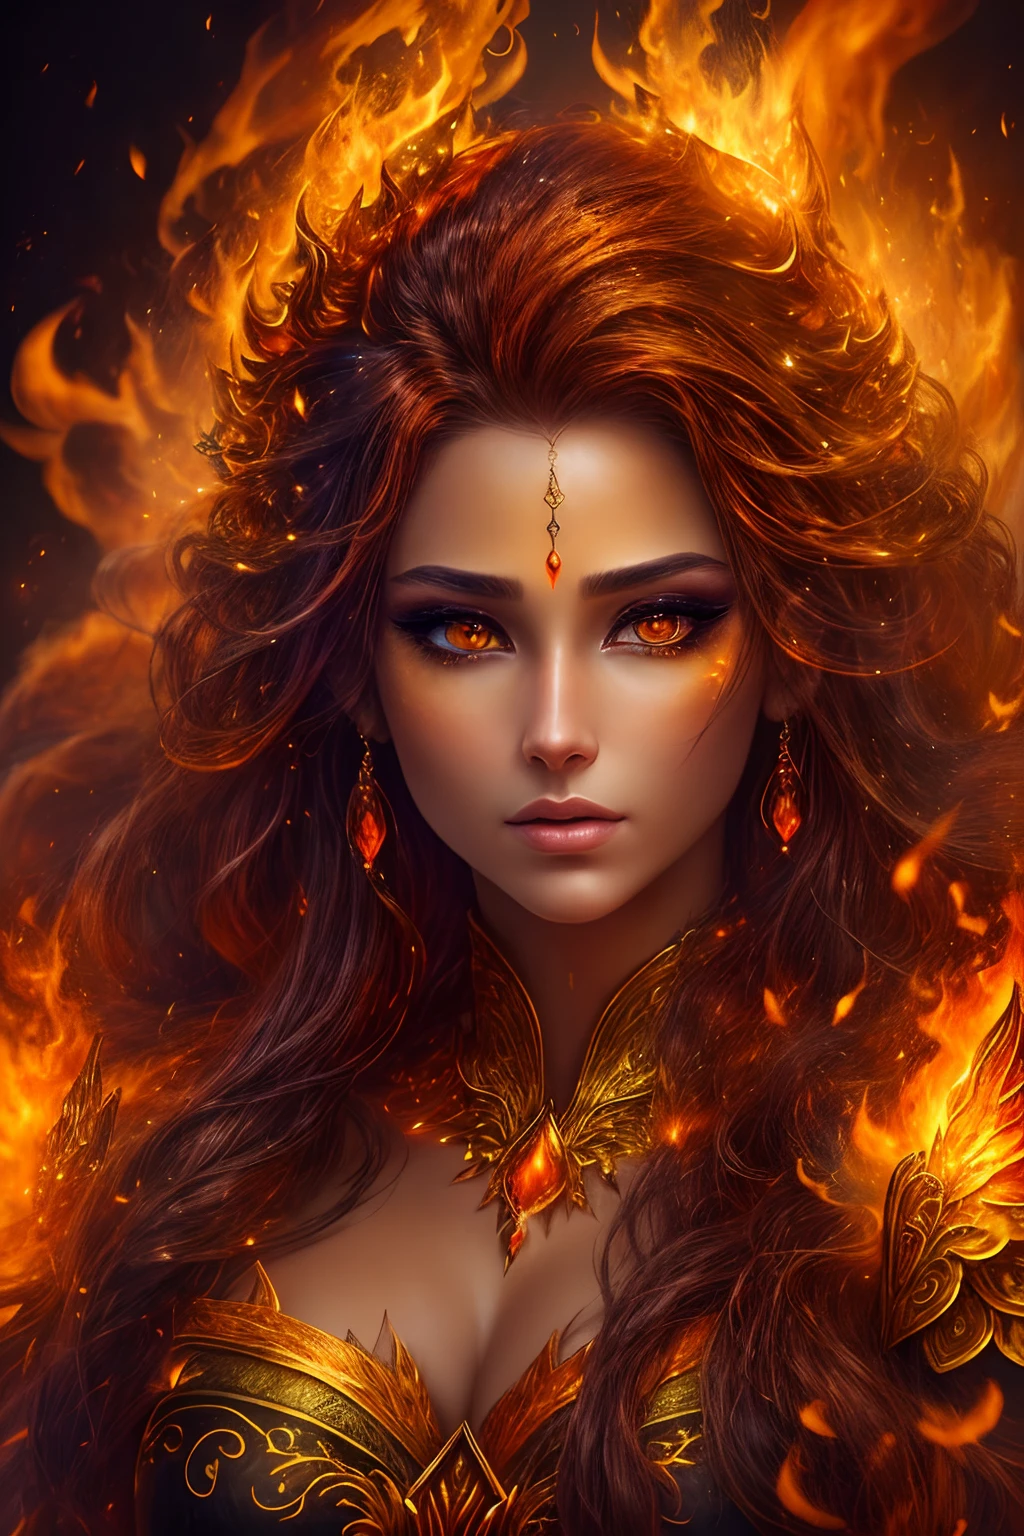 這 (現實幻想) 藝術包含餘燼, 真正的火焰, 真正的熱量, 和 realistic fire. Generate a masterpiece artwork of a  female fire druid 和 large (((orange 和 gold))) 眼睛. The fire druid is awe-inspiring 和 beautiful ((realistic fiery 眼睛)) alight 和 confidence 和 power. Her features are elegant 和 well defined, 和 ((柔軟的)) 和 (((蓬松))) 和 (((光滑的))) 嘴唇, 精靈骨骼結構, 和 realistic shading. Her 眼睛 are important 和 should be the focal point of this artwork, 和 ((極為真實的細節, 宏觀細節, 和 shimmer.)) She is wearing a billowing 和 glittering dress made of realistic flames 和 jewels that glimmer in the fire light. Wisps of fire 和 smoke line the intricate bodice of the dress. 包括凹凸, 石头, 火紅的虹彩, 發光的餘燼, silk 和 satin 和 leather, 有趣的背景, 和 heavy fantasy elements. 相机: 利用動態構圖技術增強真實的火焰.